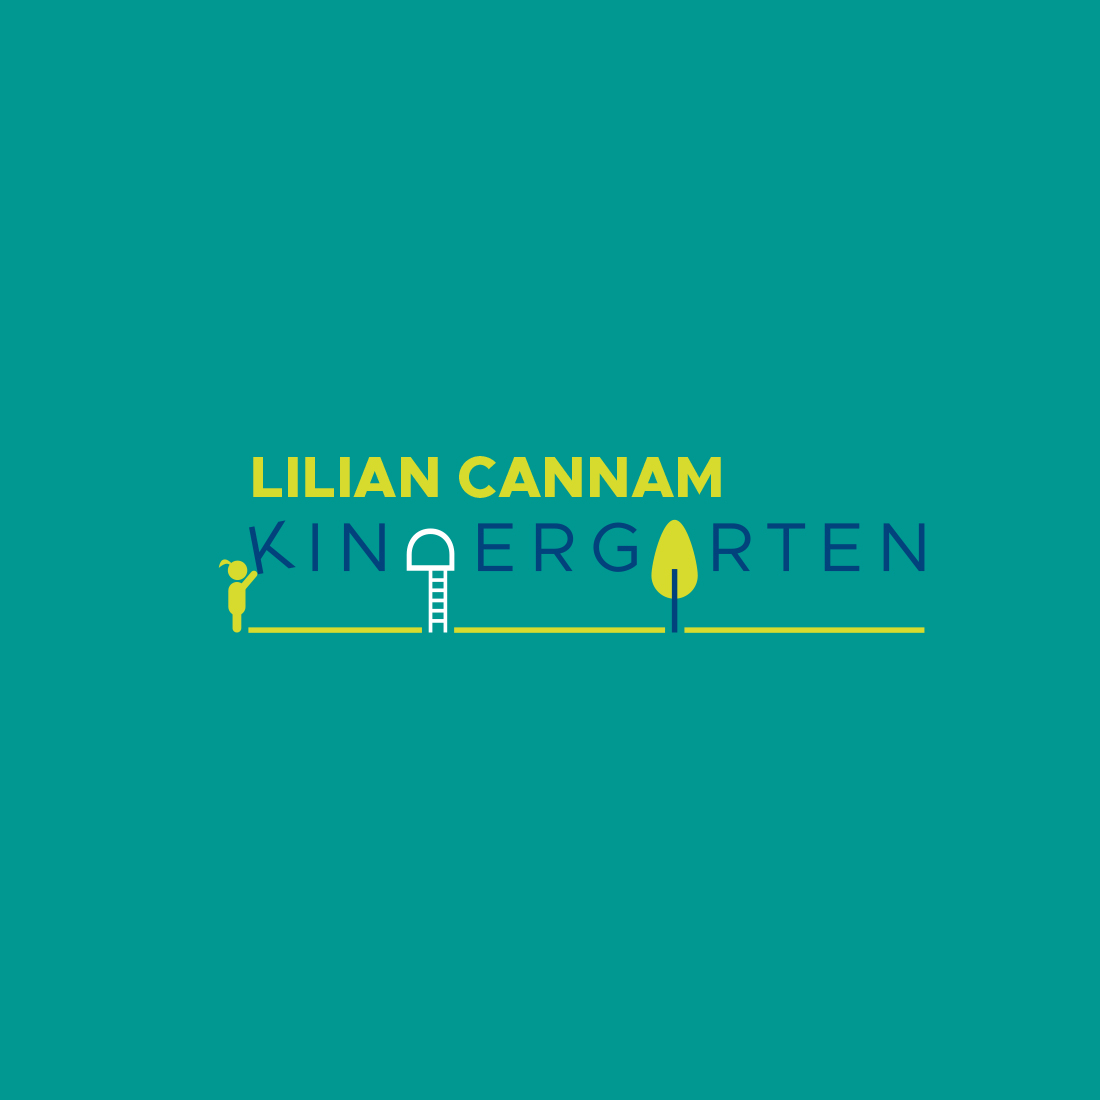 LilianCannam_logo.jpg